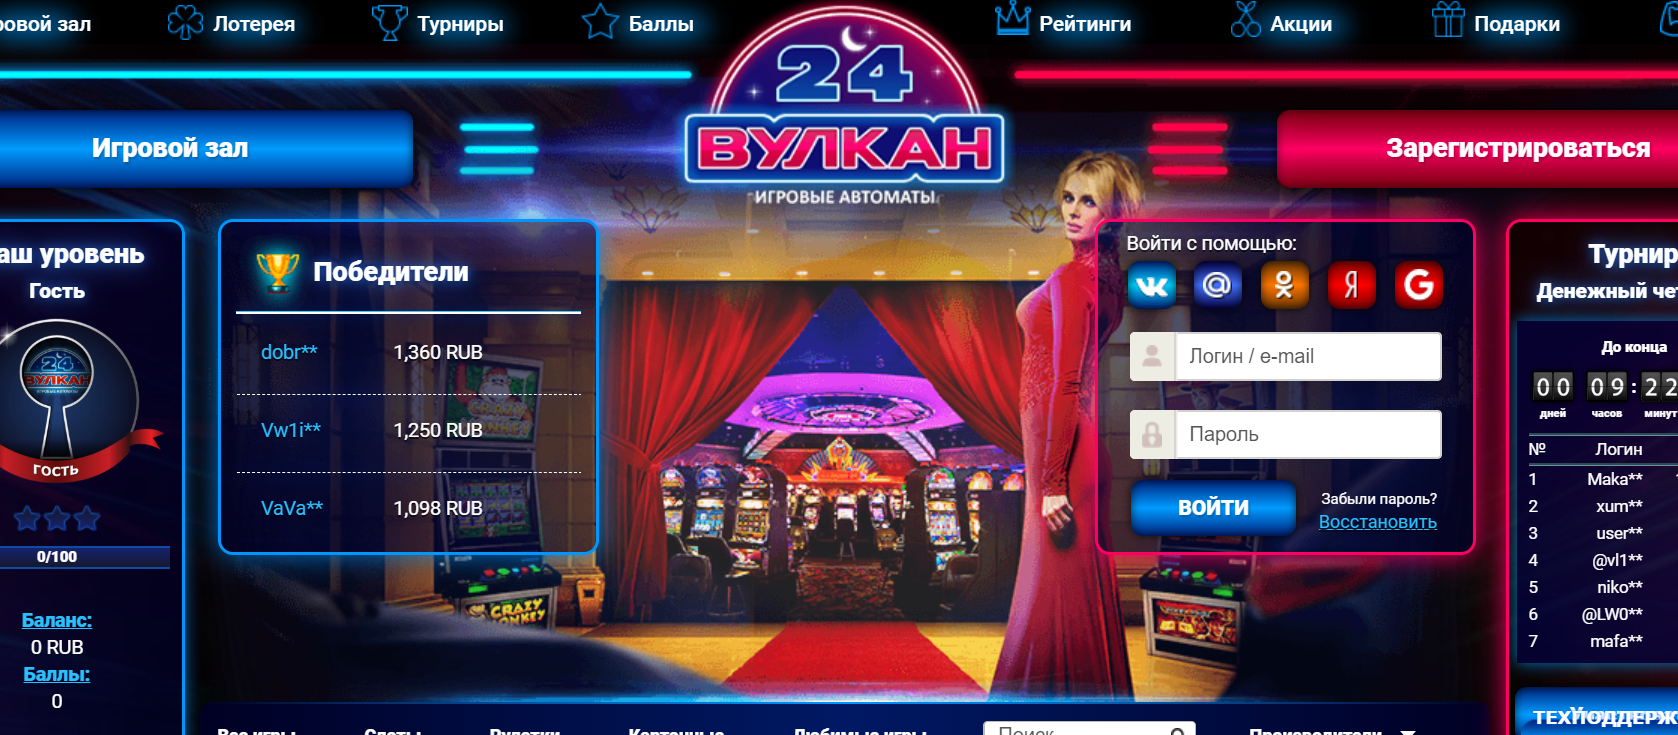 Вулкан казино – онлайн игры в интернете